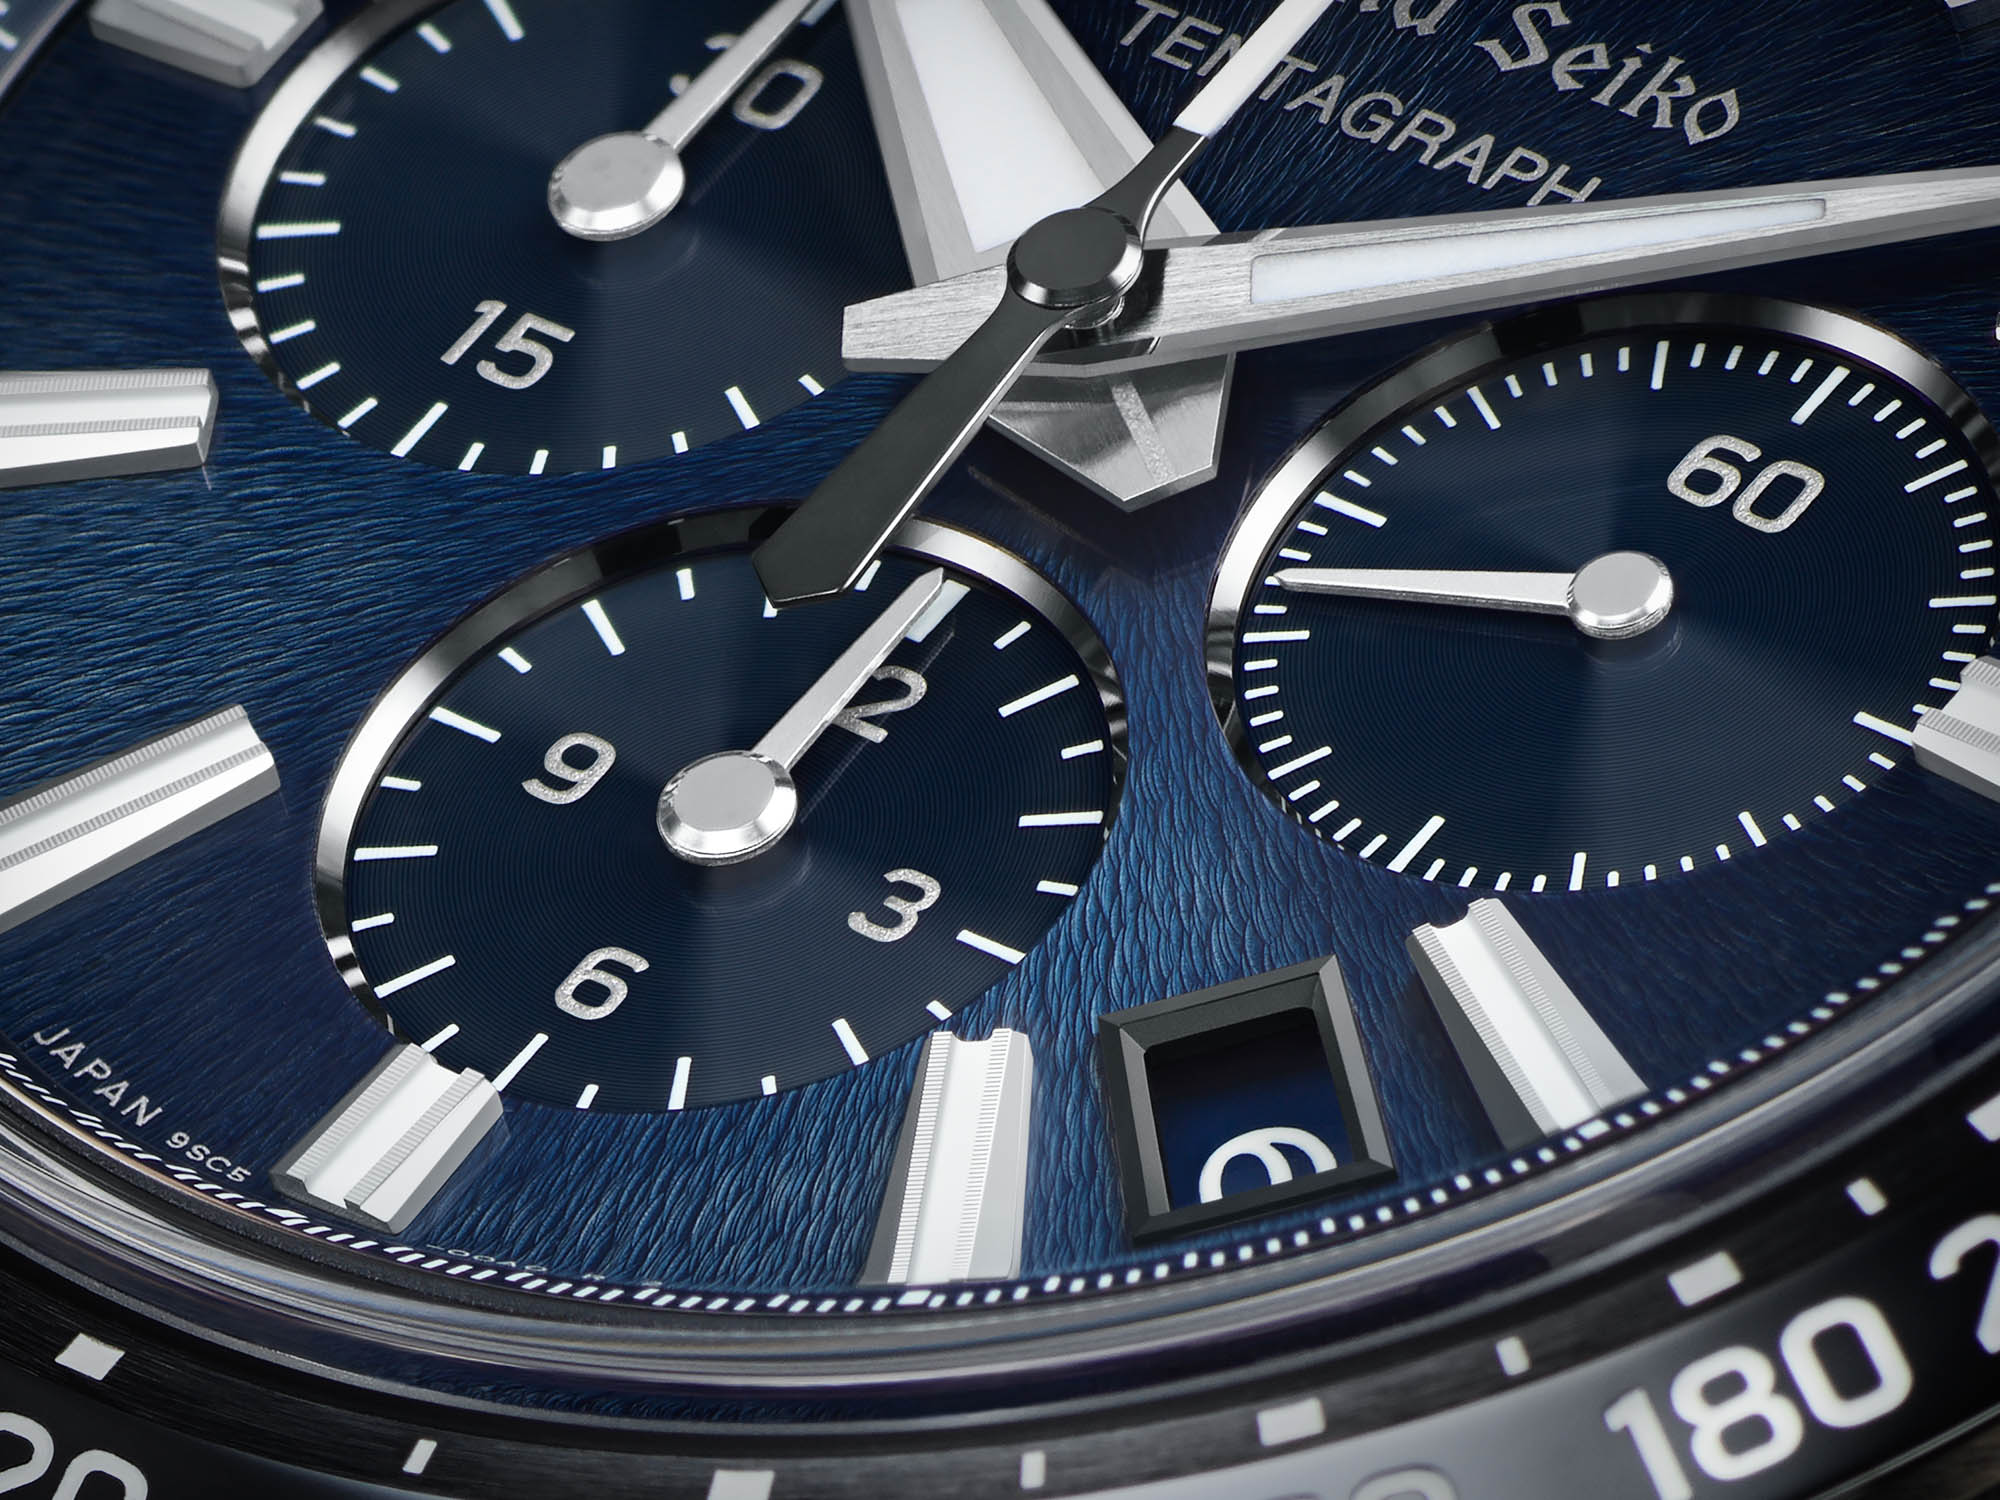 Часы Grand Seiko Tentagraph SLGC001 - первый в истории бренда механический хронограф